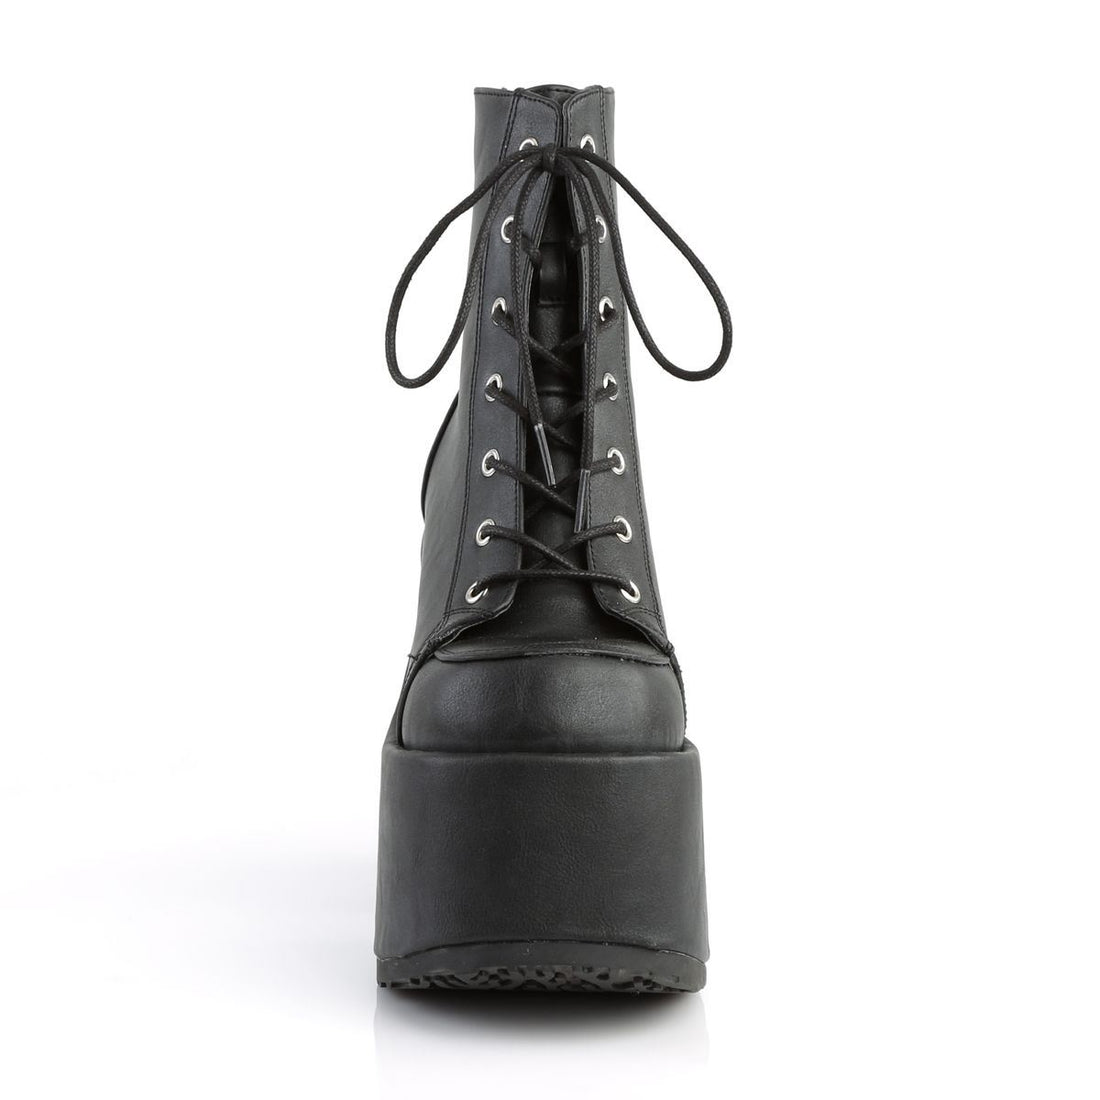 Demonia Camel 203 Black Vegan Leather Platform Ankle Boots